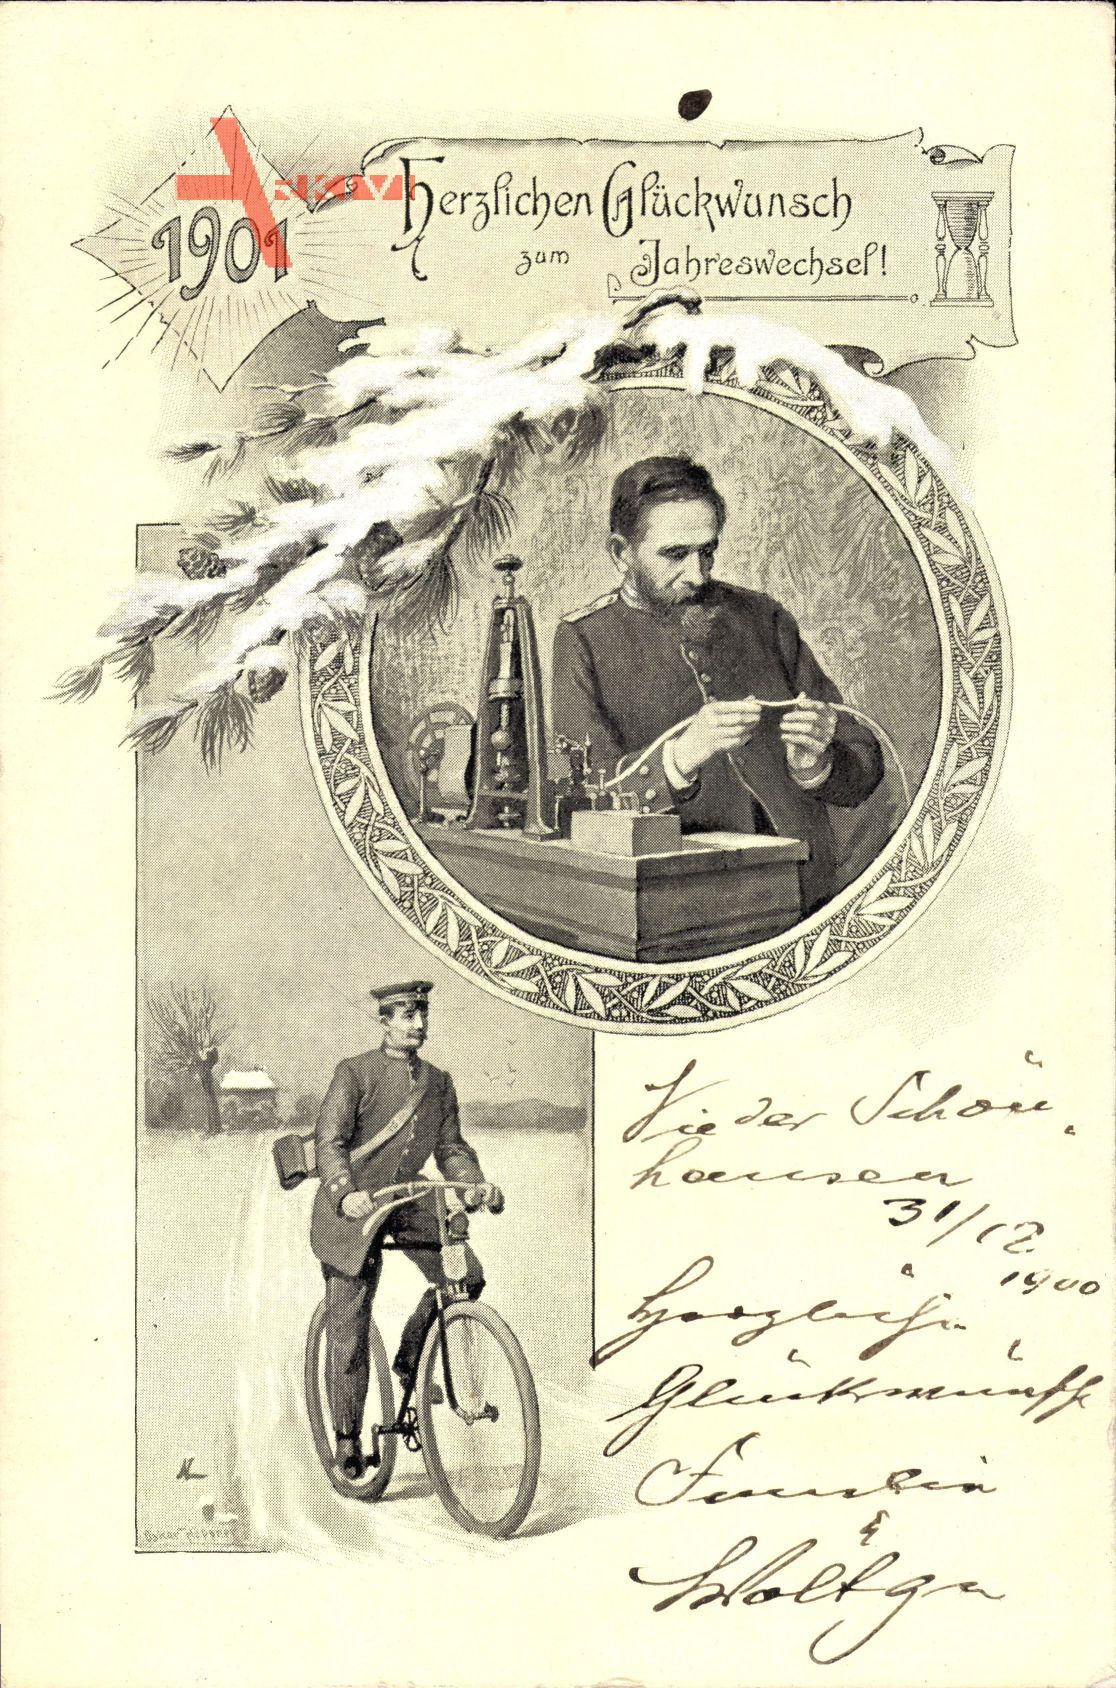 Glückwunsch Neujahr, Jahreszahl 1901, Telegraf, Postbote